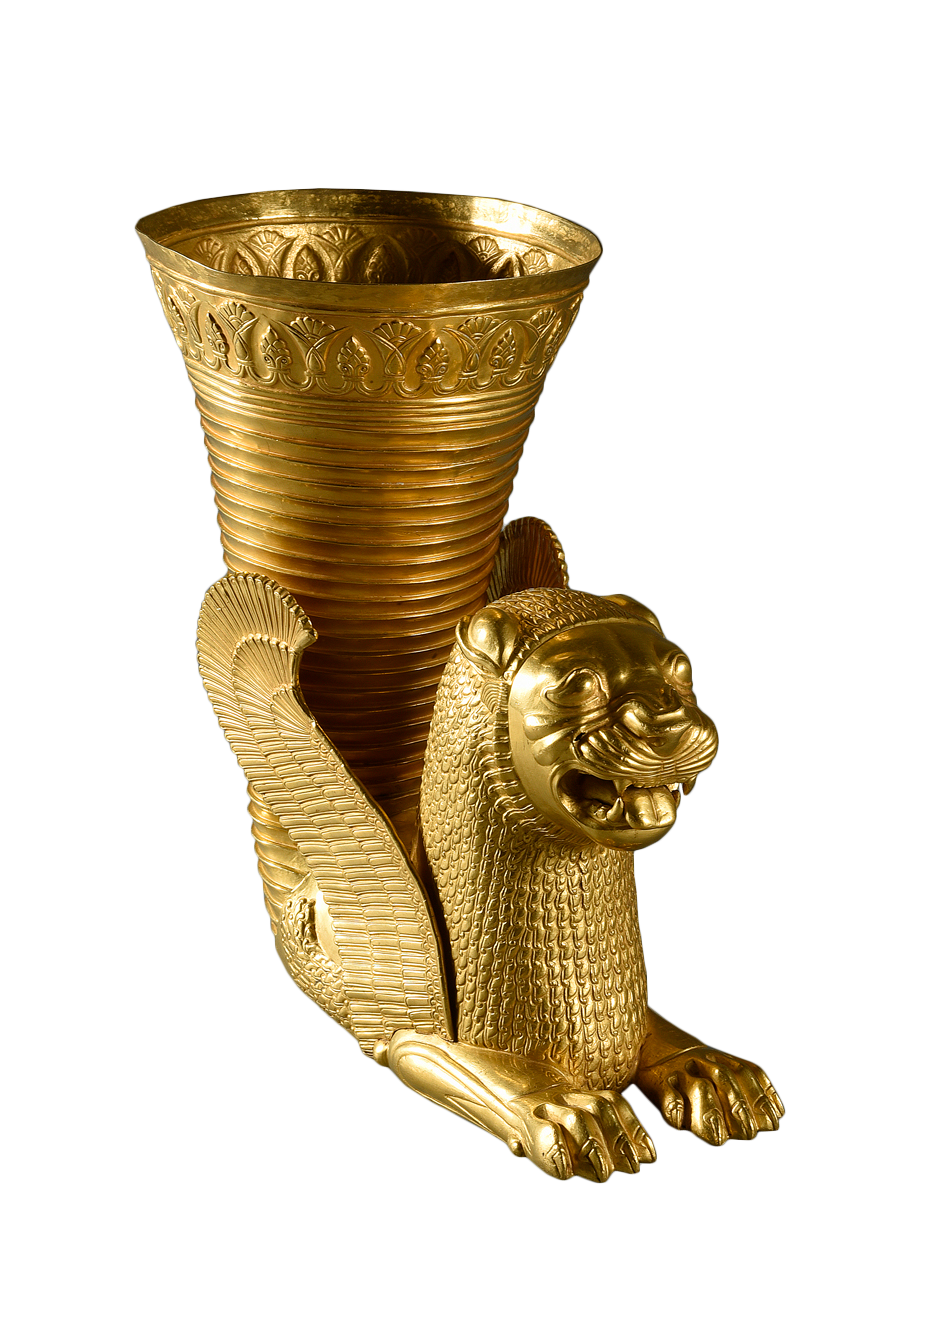 Ritón de oro del periodo persa aqueménida